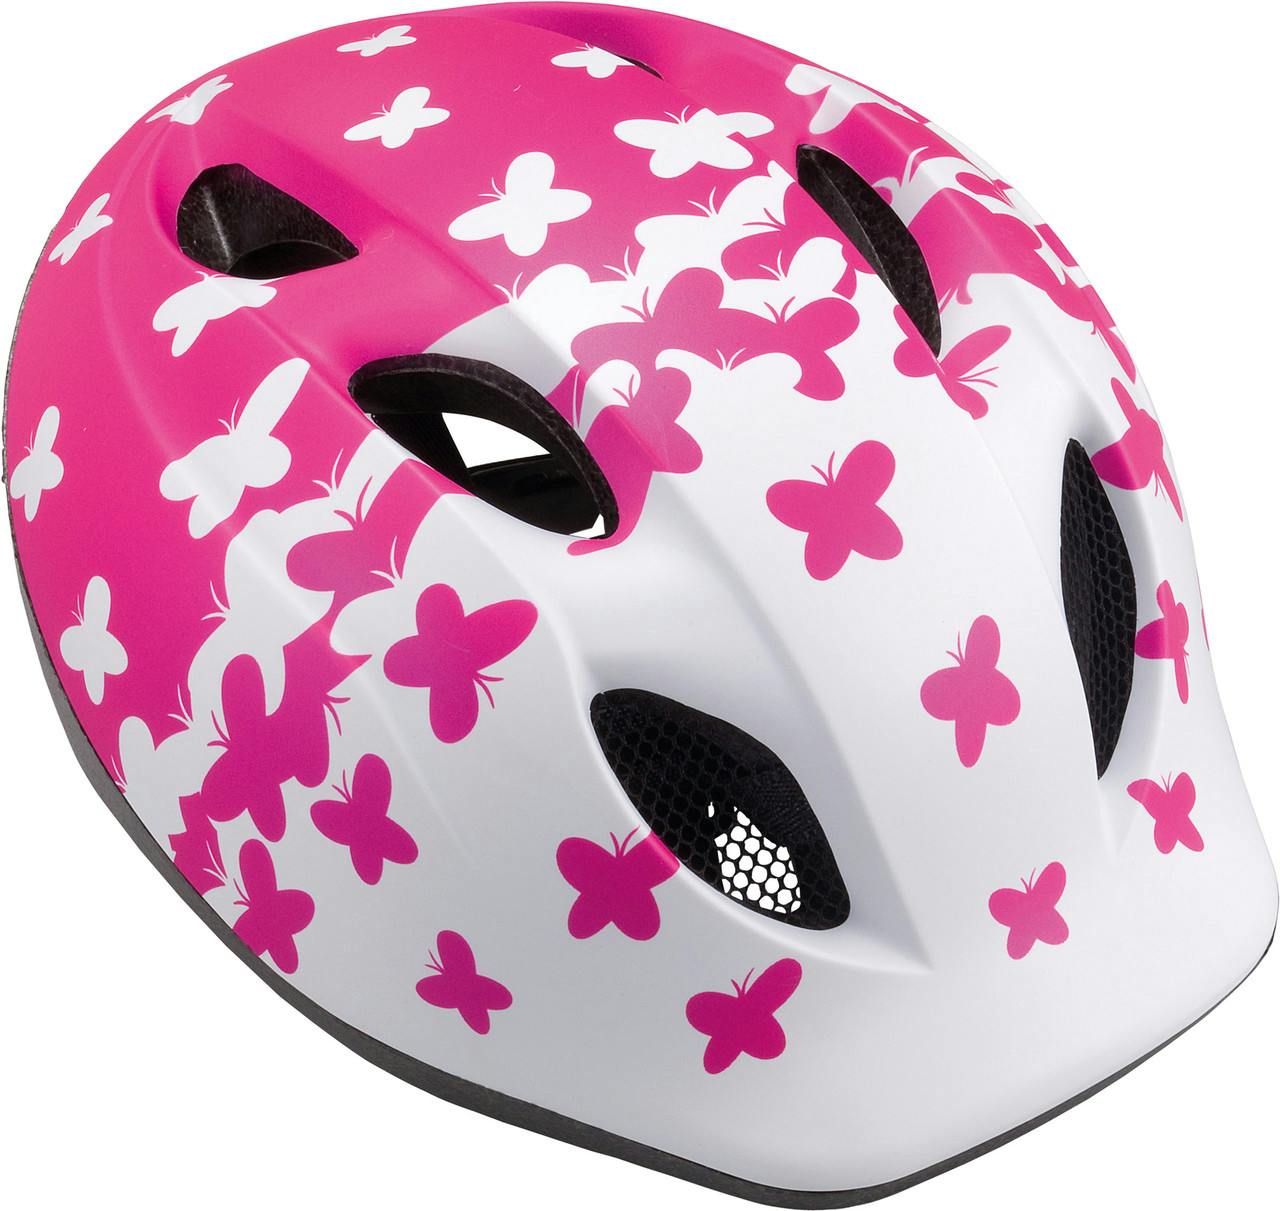 Super Buddy Helmet Pink Butterflies